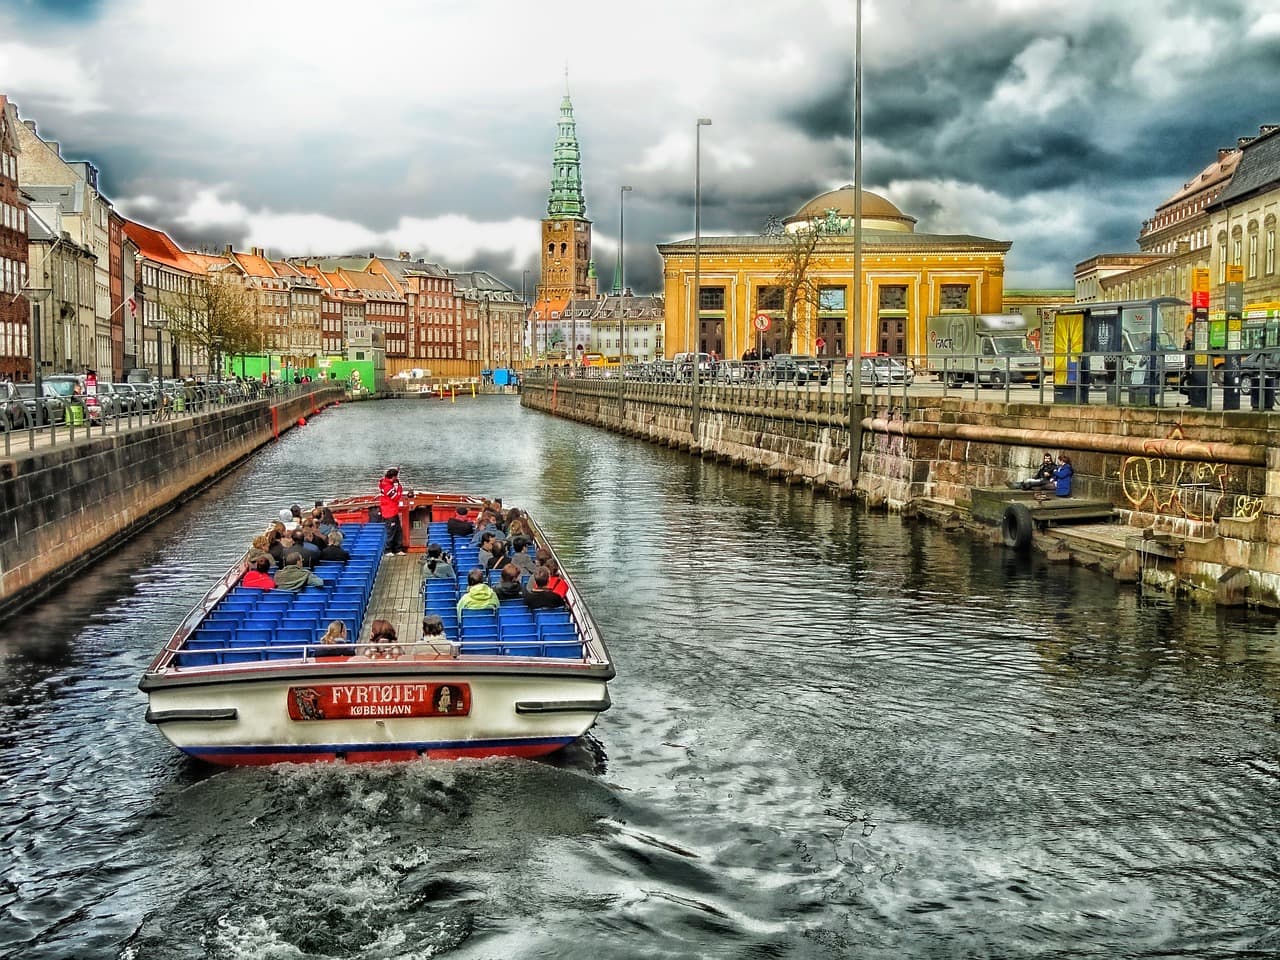 O canal em Nyhavn  é uma ótima área para percorrer de bicicleta em Copenhagen